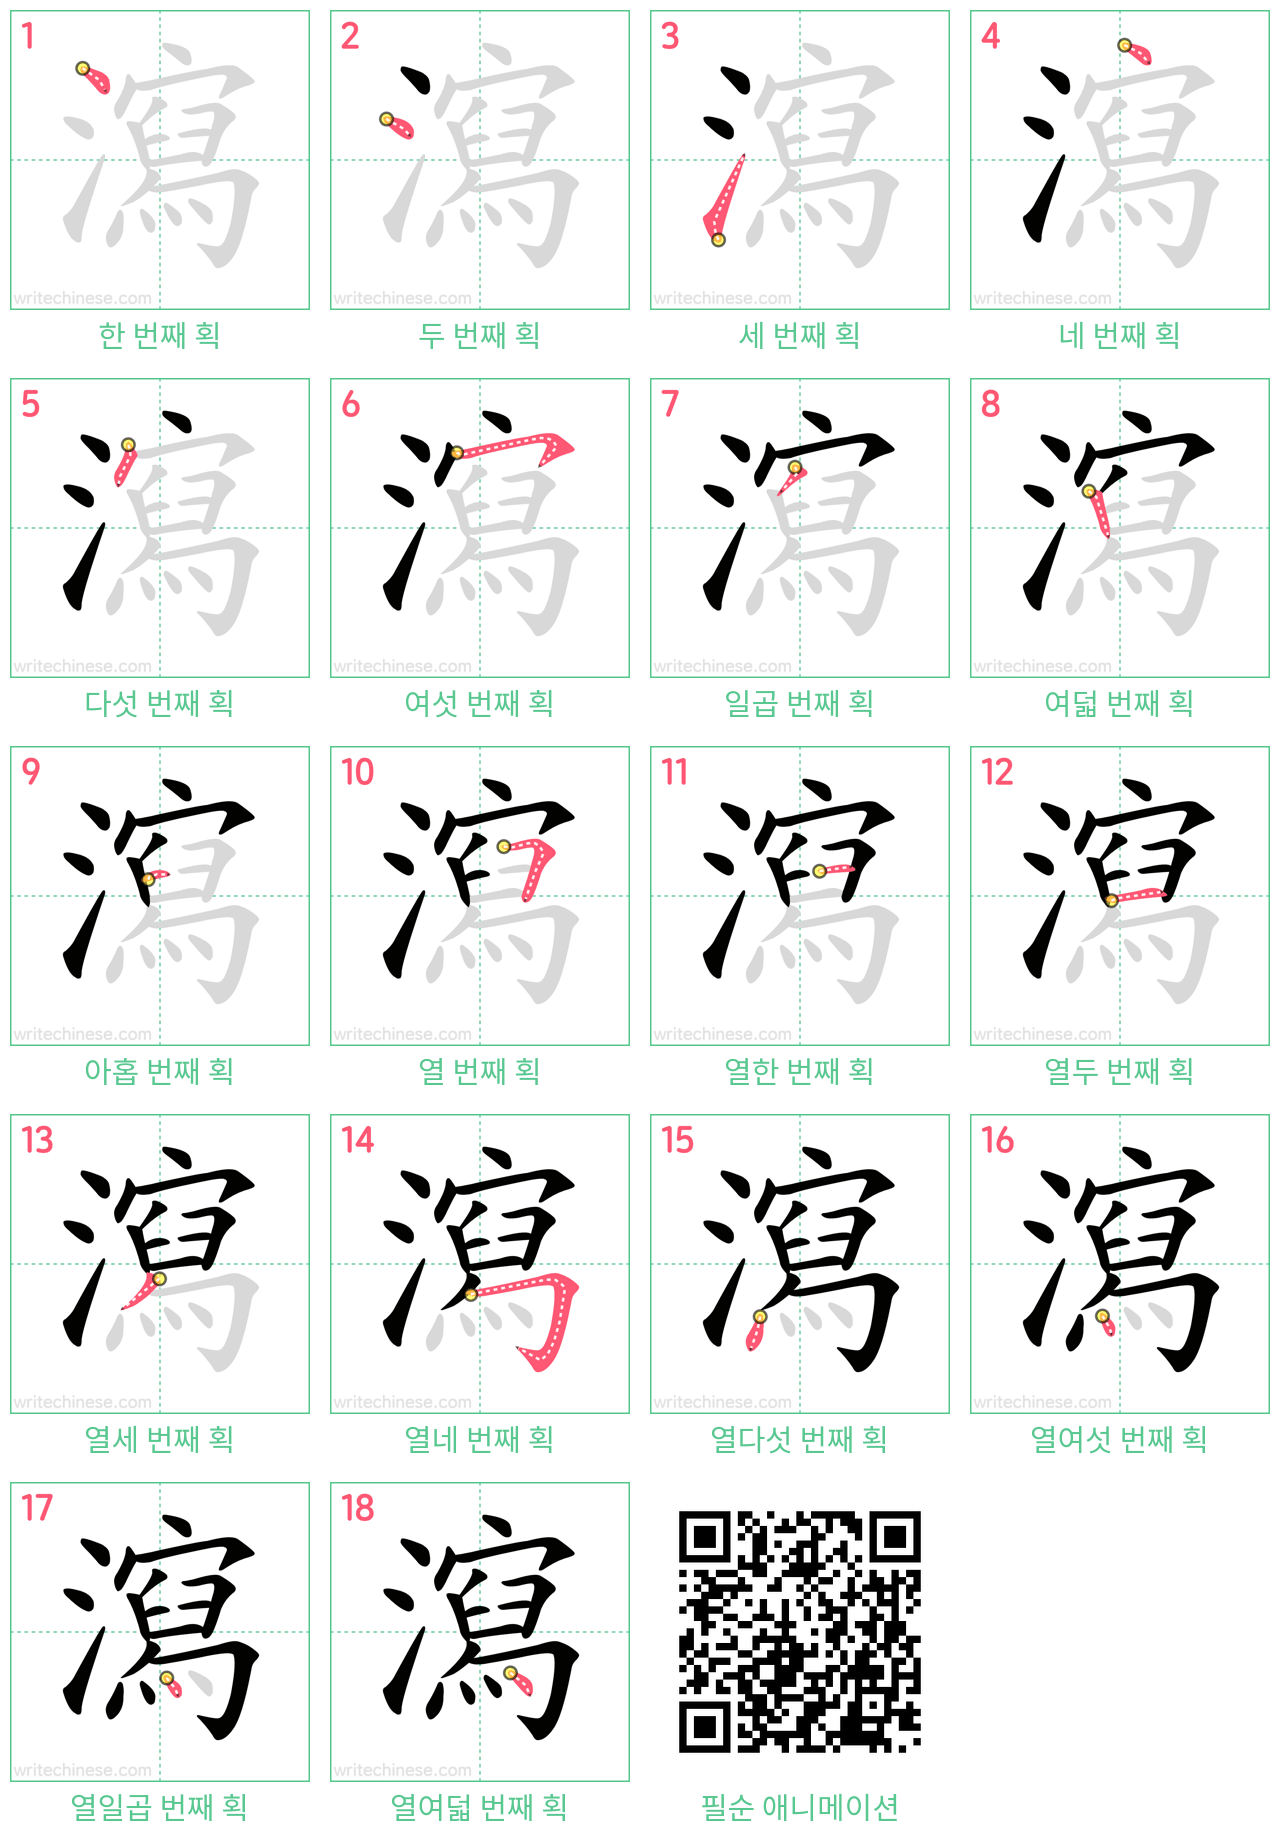 瀉 step-by-step stroke order diagrams